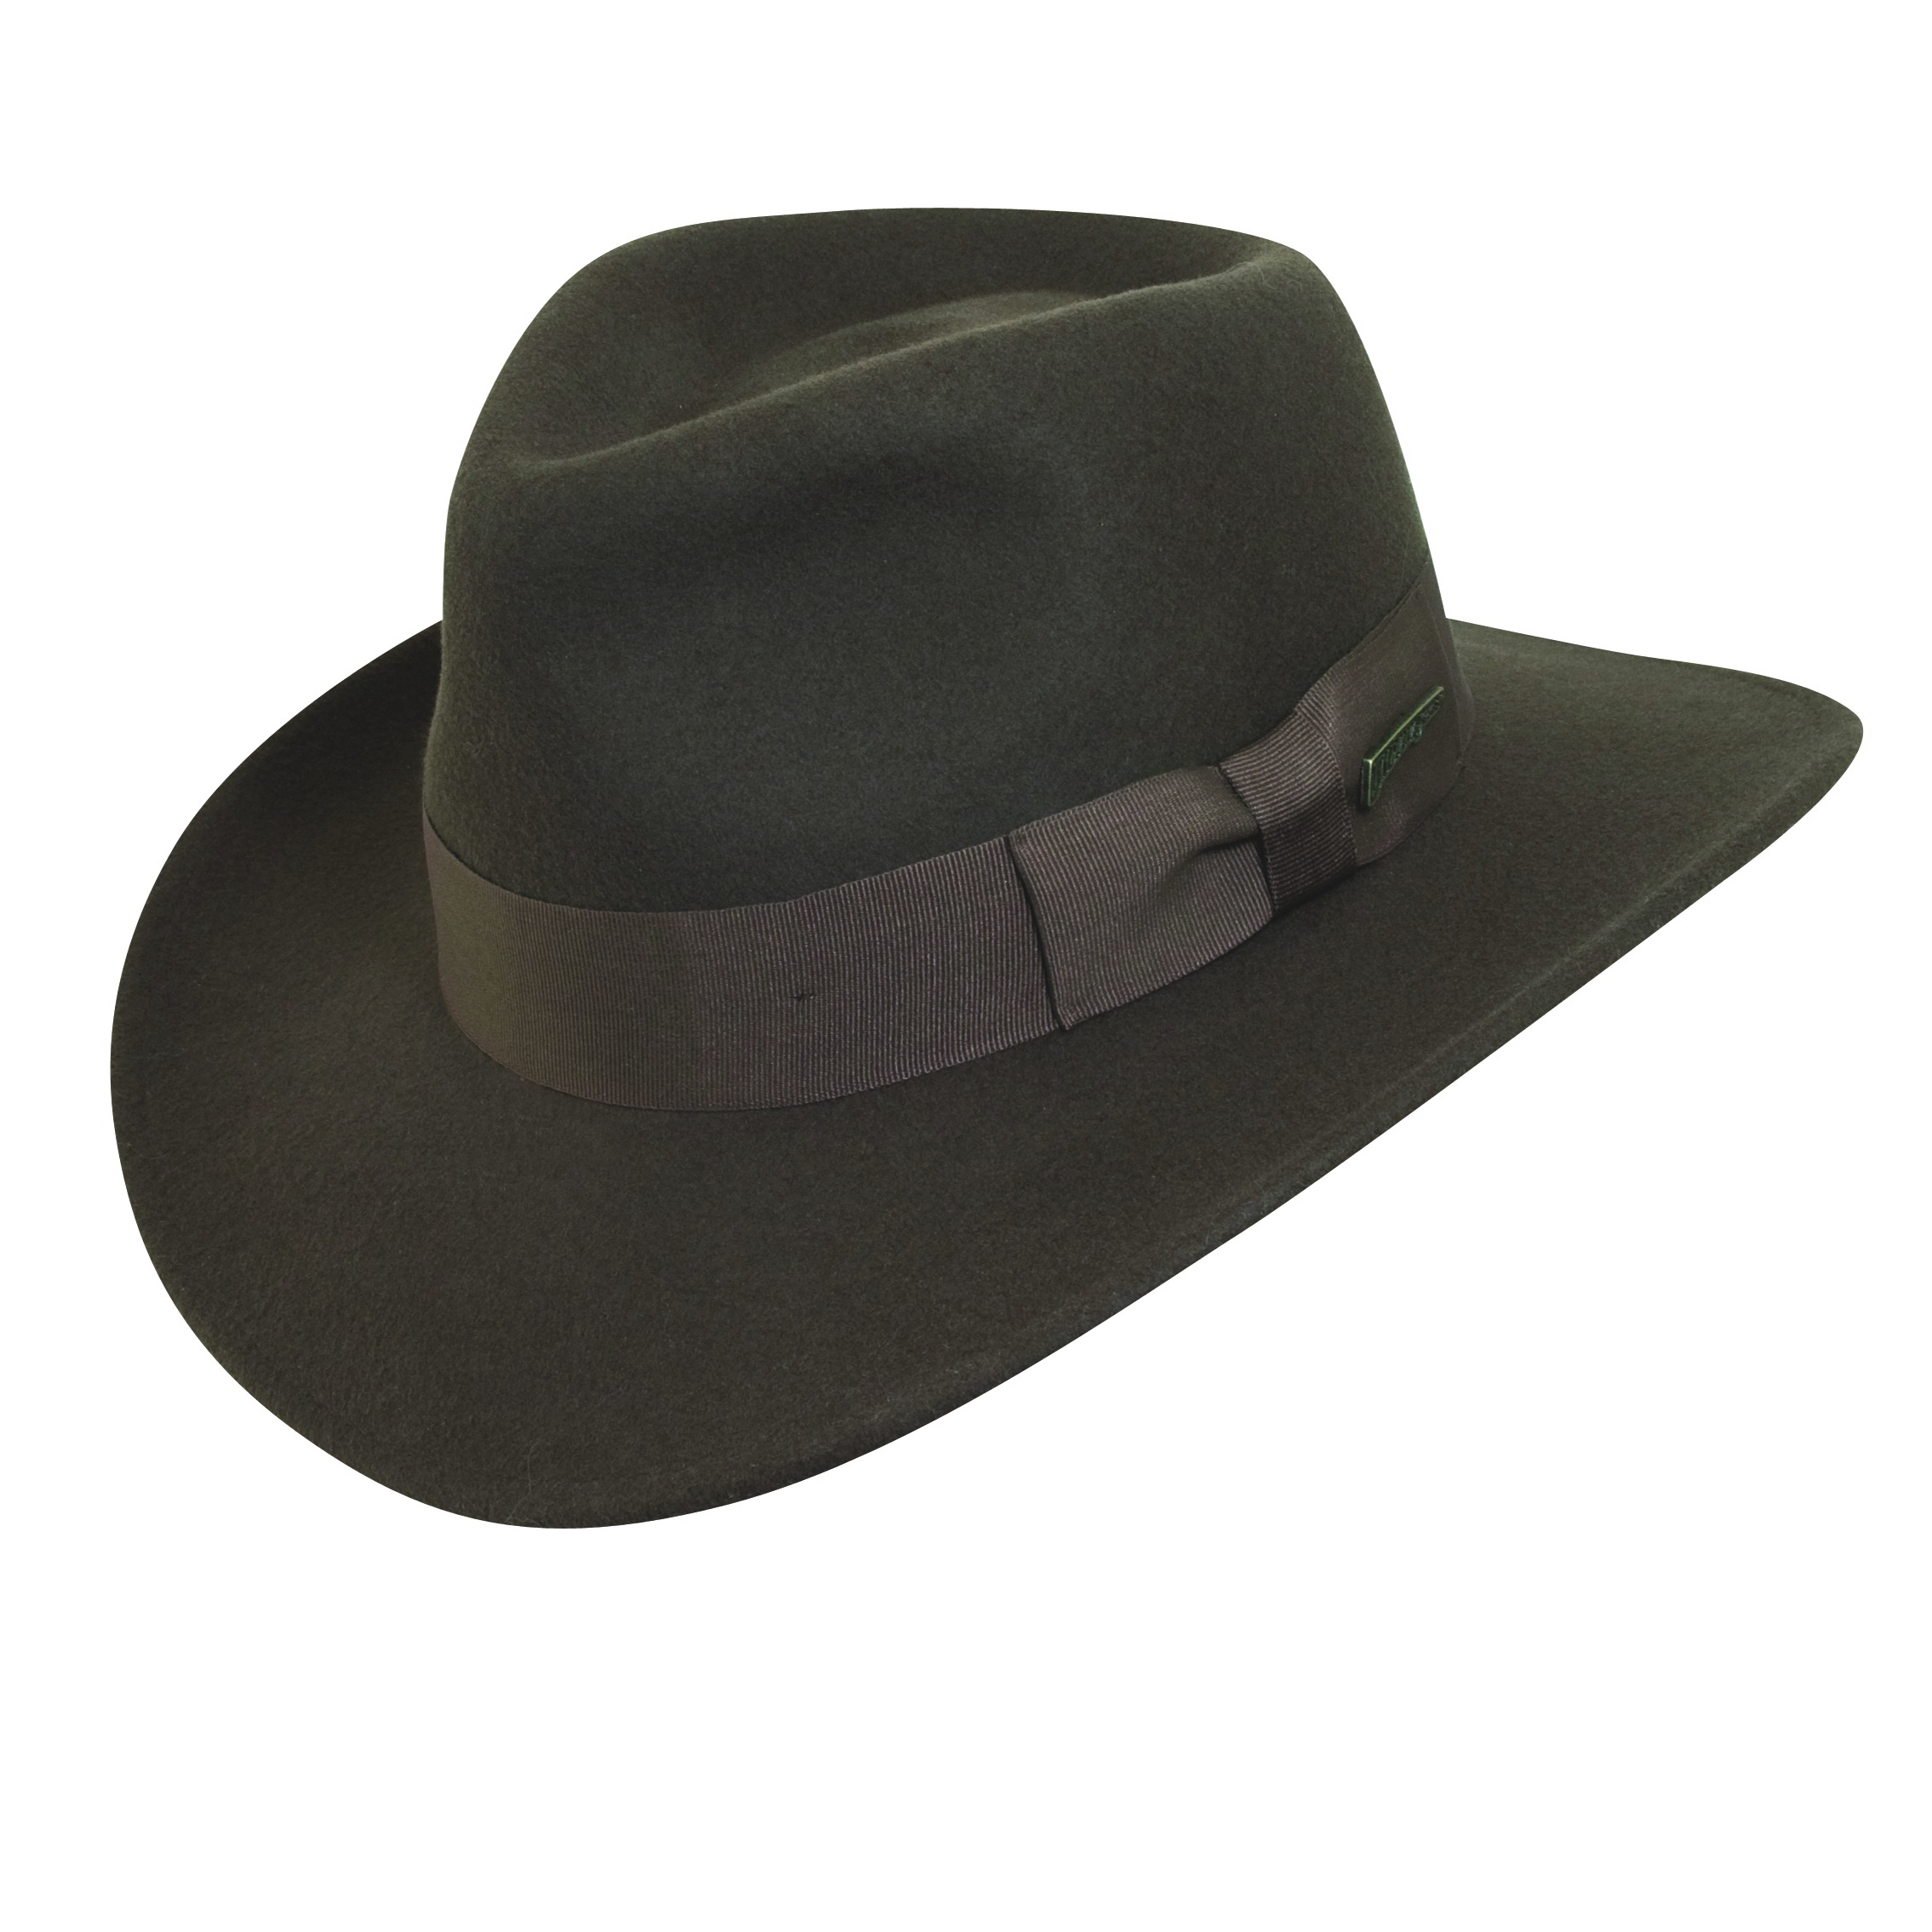 Indiana Jones Hat PNG - 50534